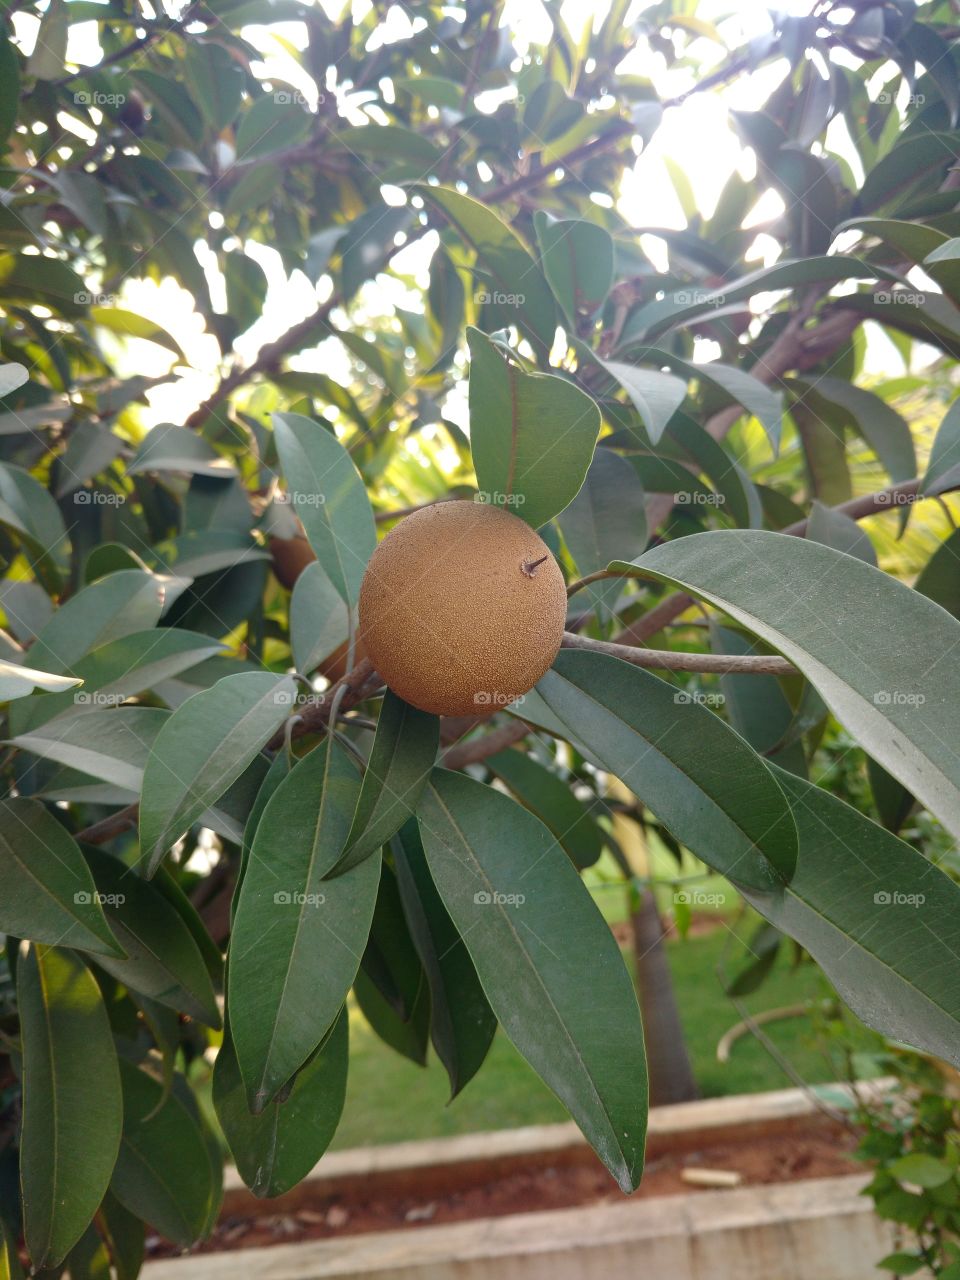 sapota fruit